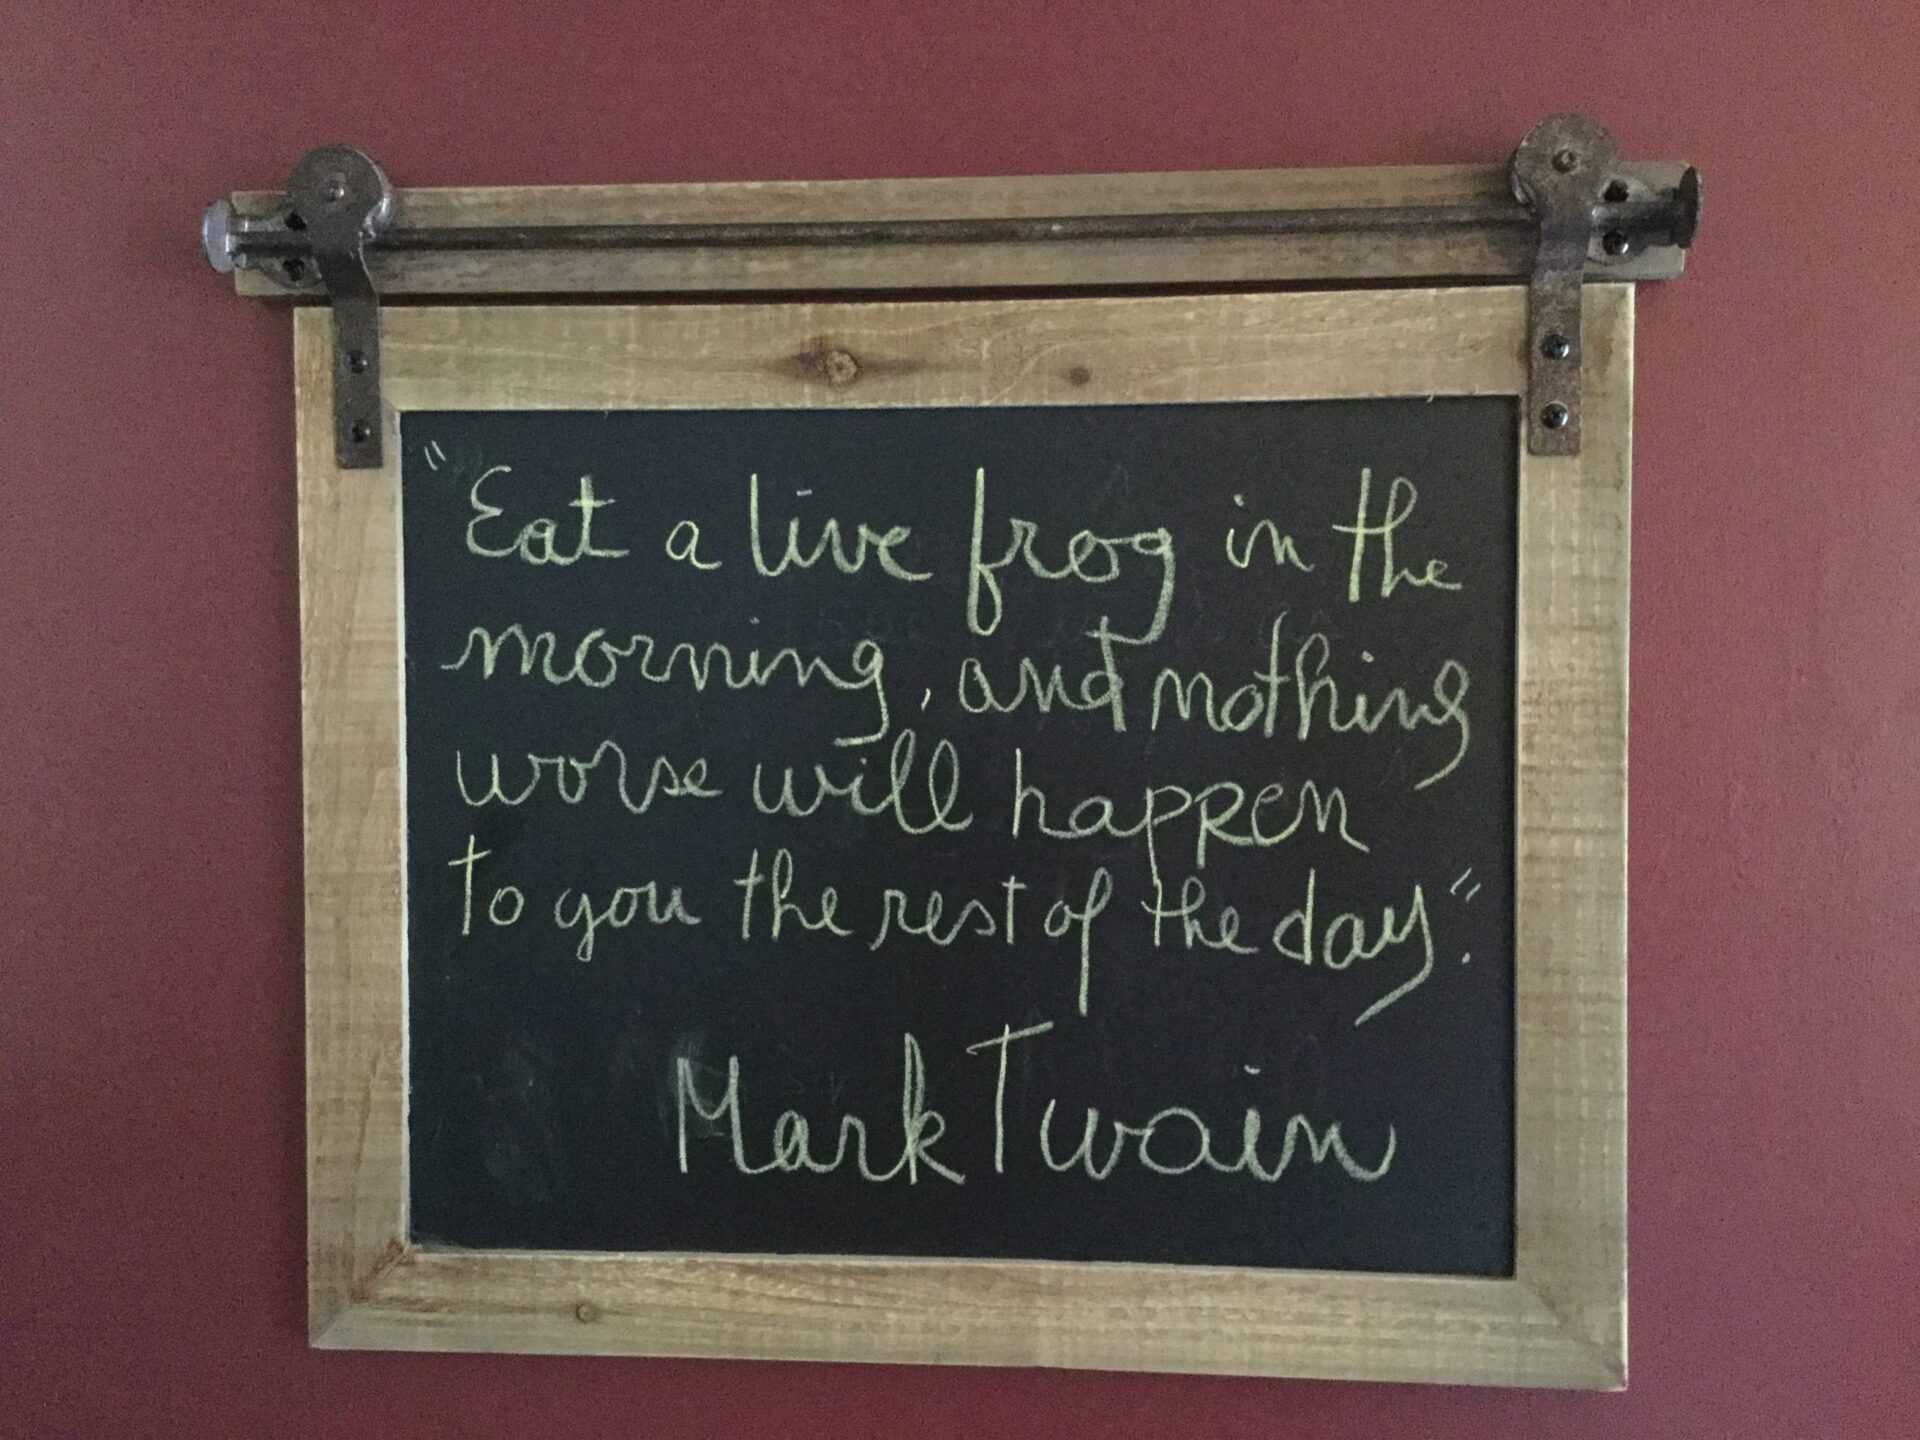 Citation de Mark Twain